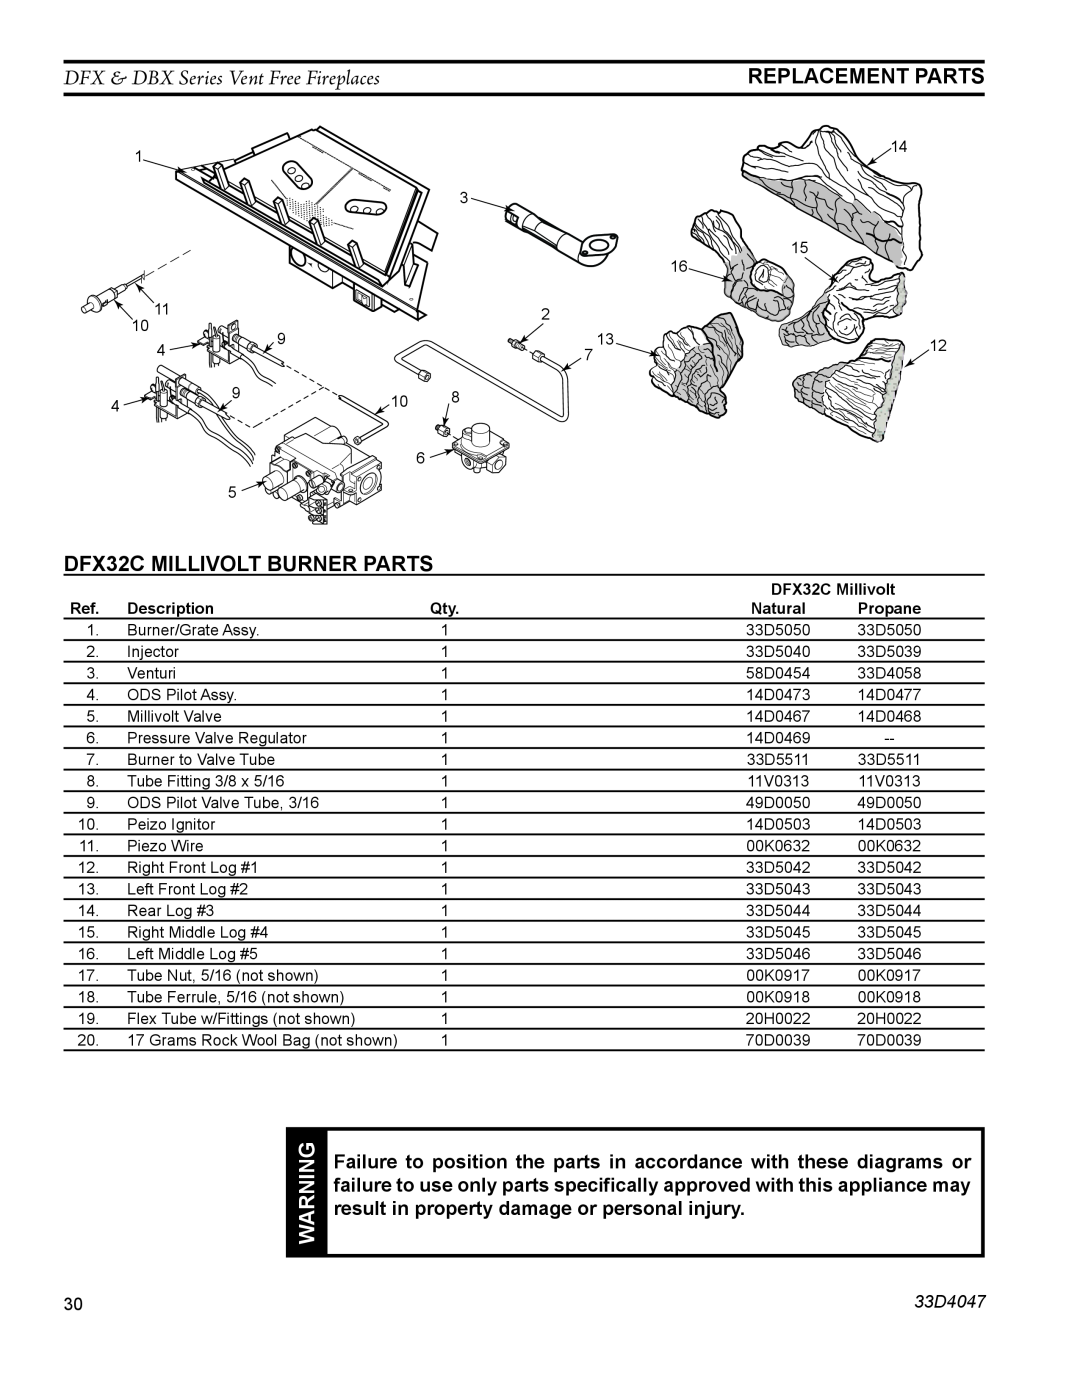 Monessen Hearth DFX24C Replacement Parts, DFX32C Millivolt Burner Parts, DFX & DBX Series Vent Free Fireplaces, 33D4047 